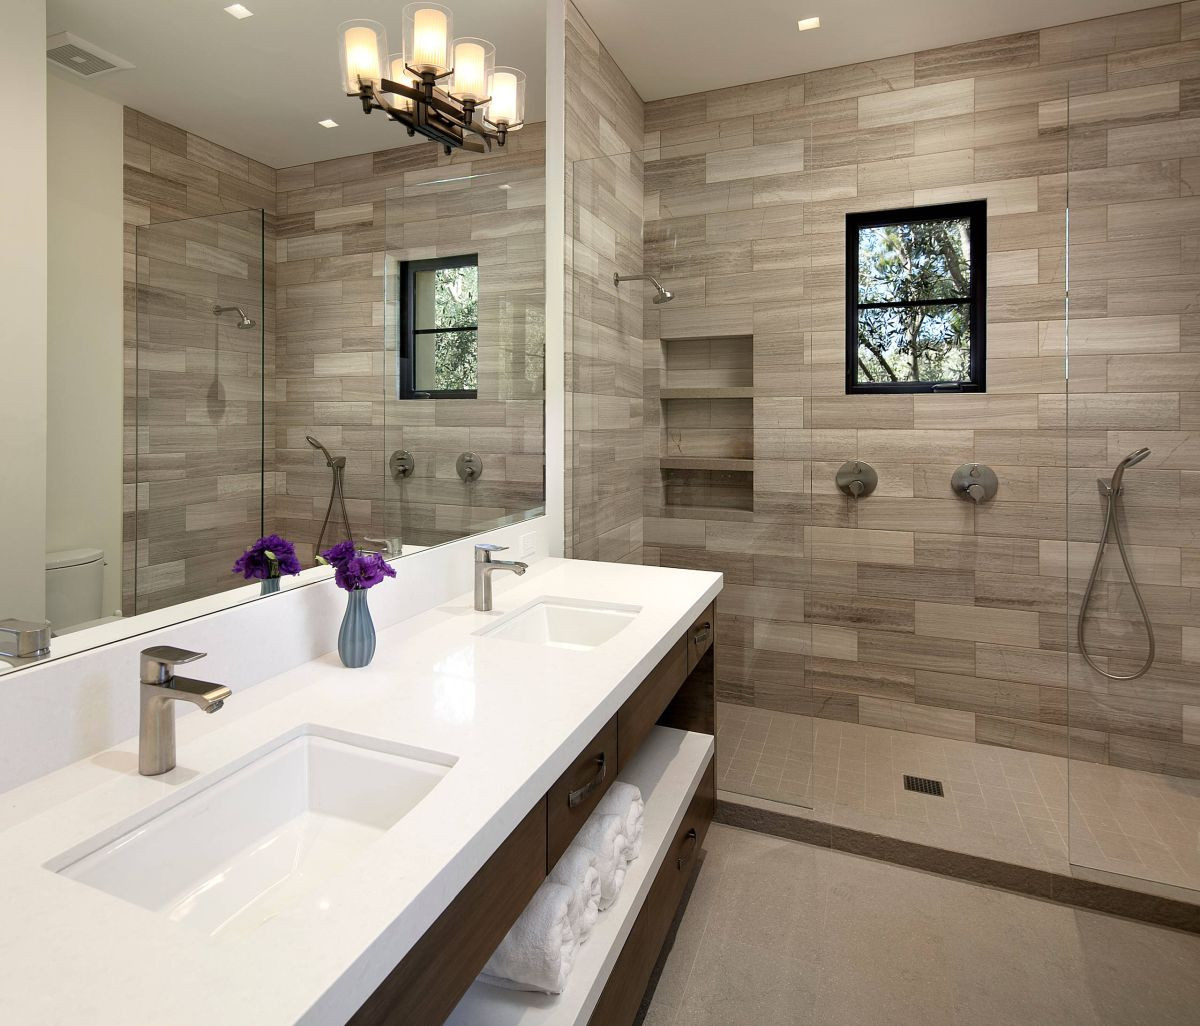 Wood Tile Bathroom Shower
 15 Wood Tile Showers For Your Bathroom